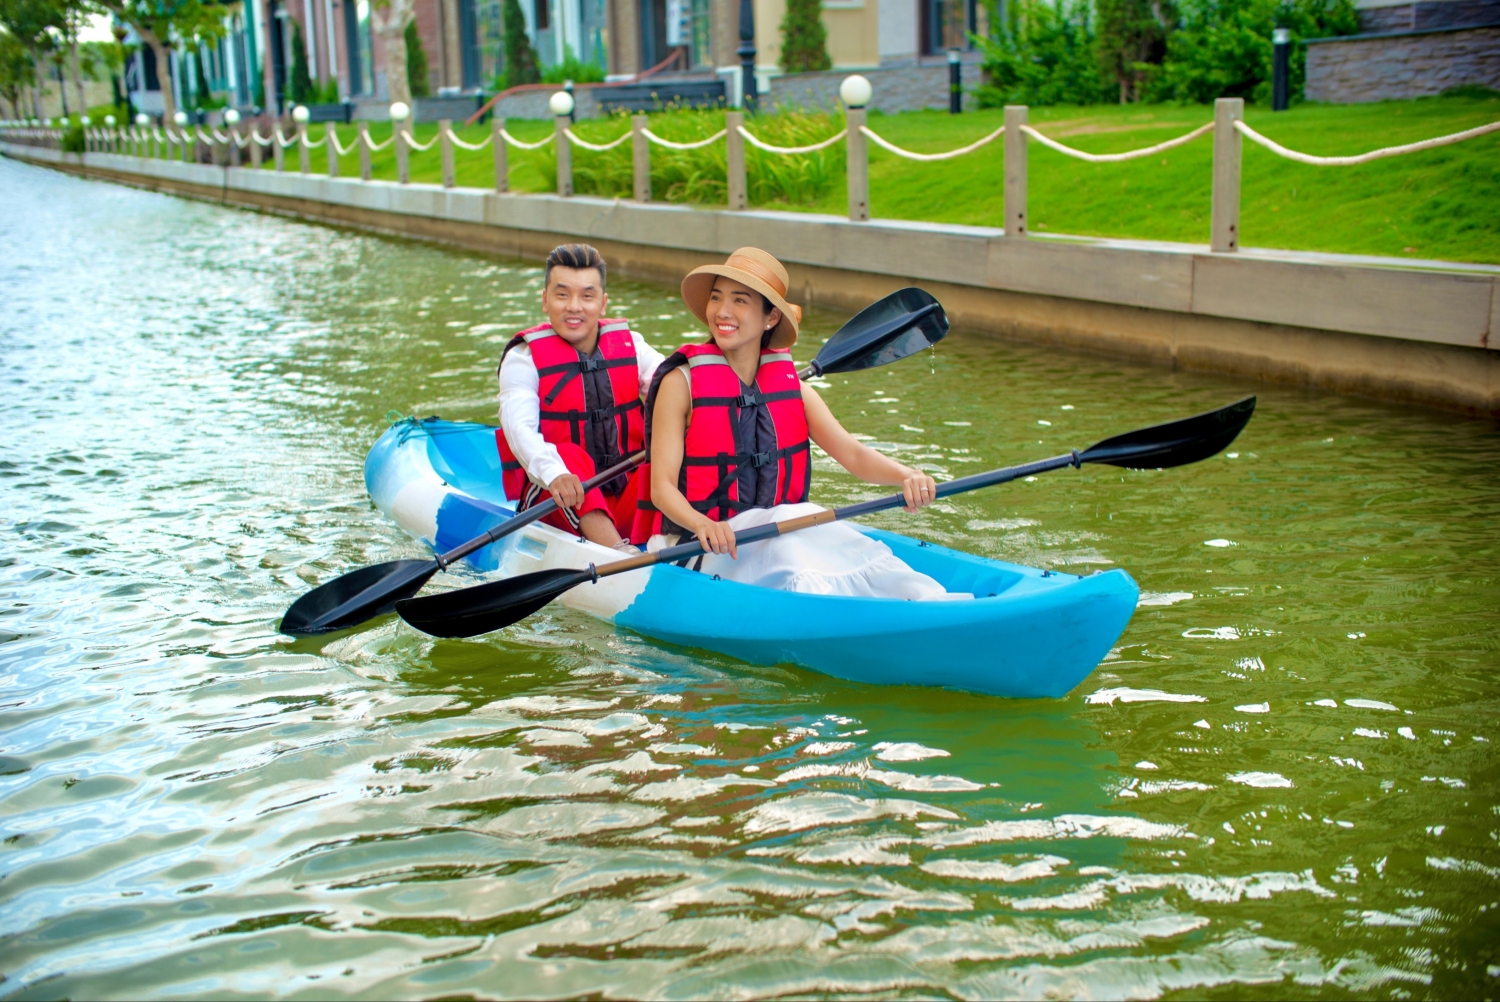 Ca sĩ Ưng Hoàng Phúc cùng vợ trải nghiệm chèo thuyền kayak